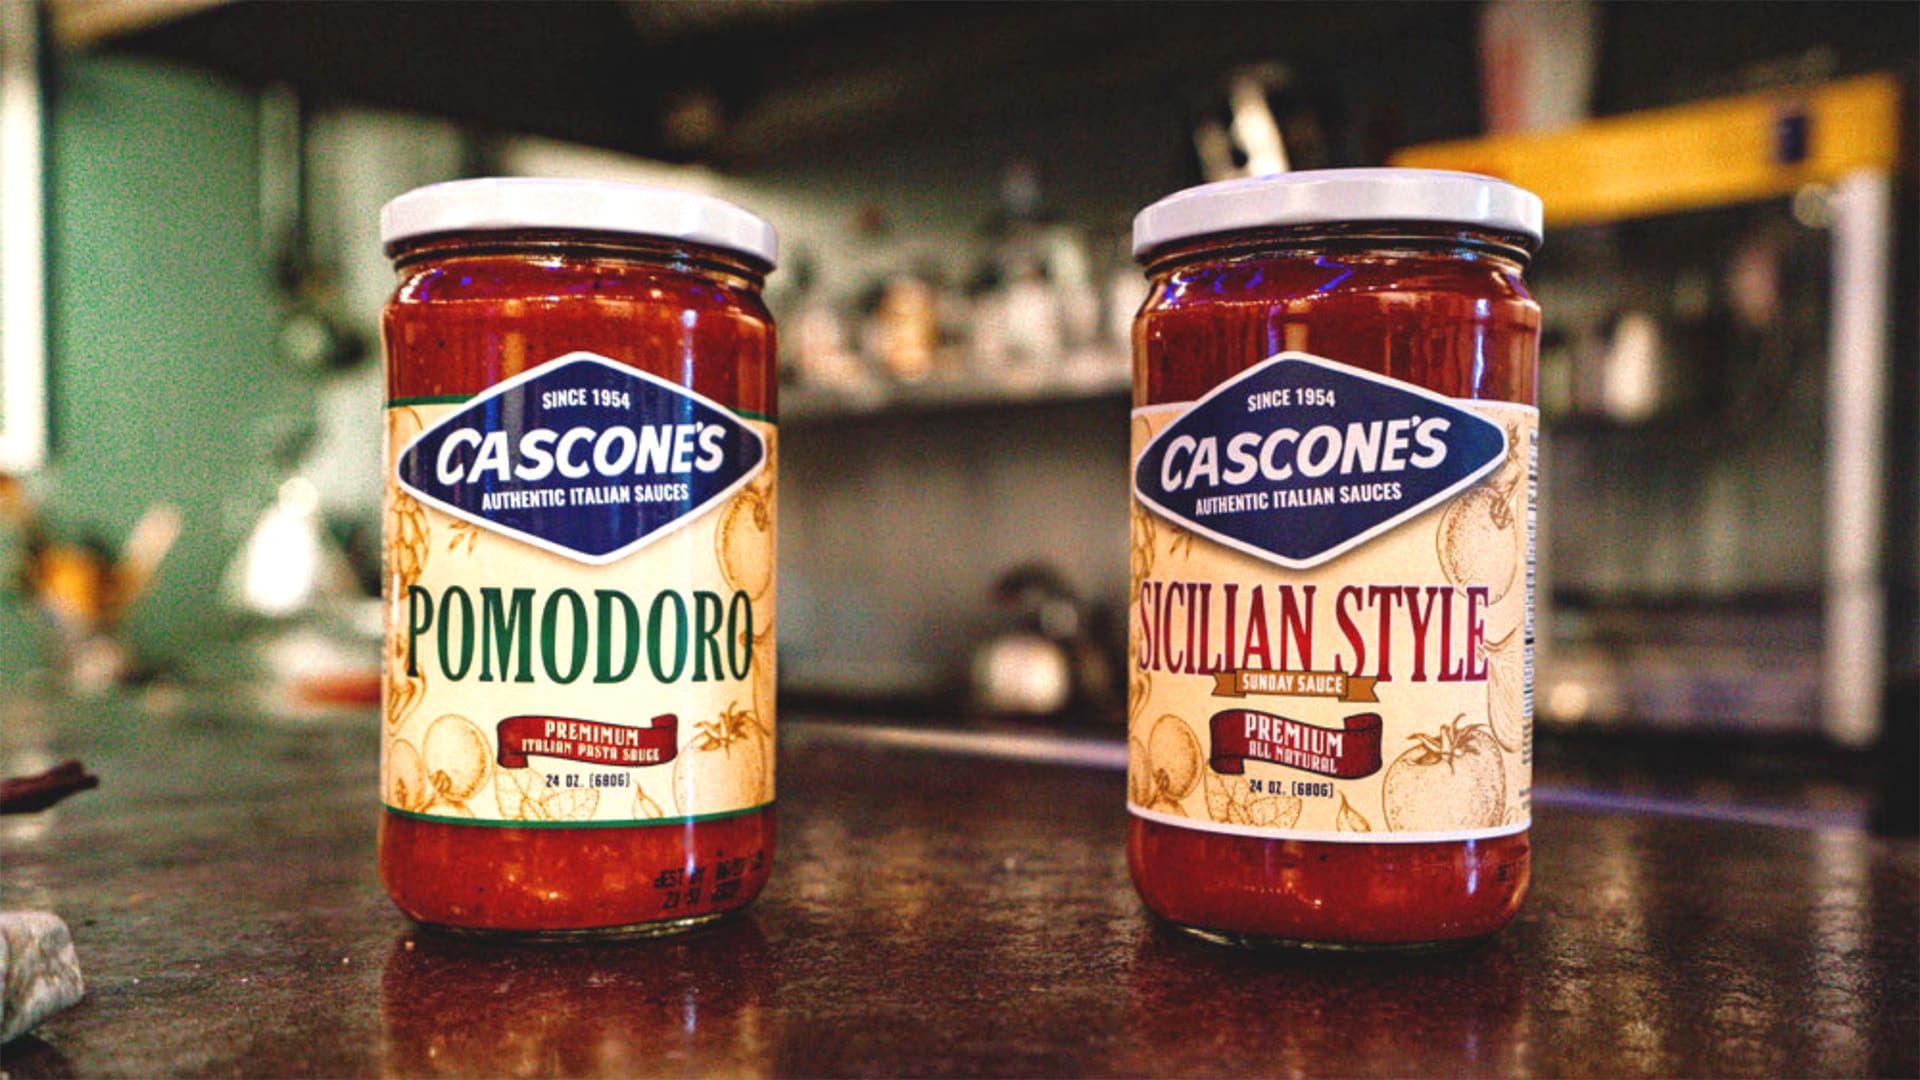 Cascone's original pasta sauces